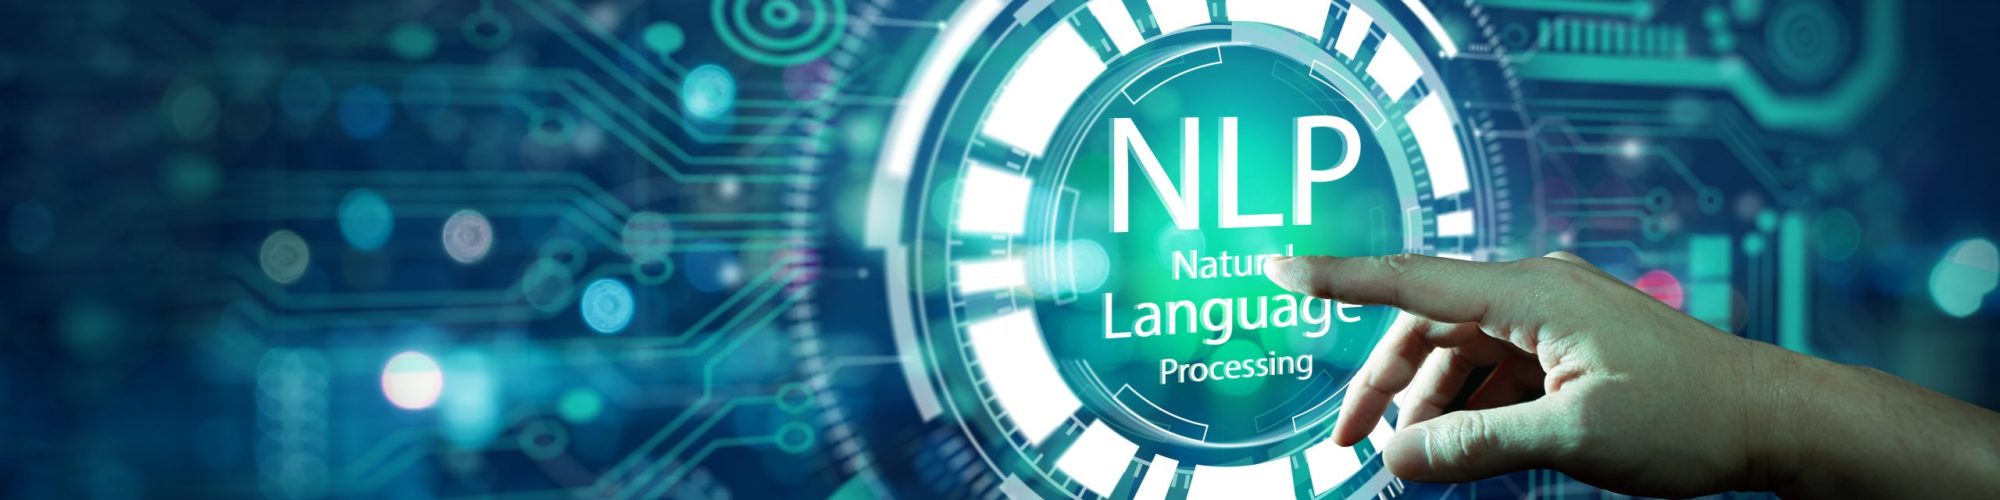 پردازش زبان طبیعی چیست؟